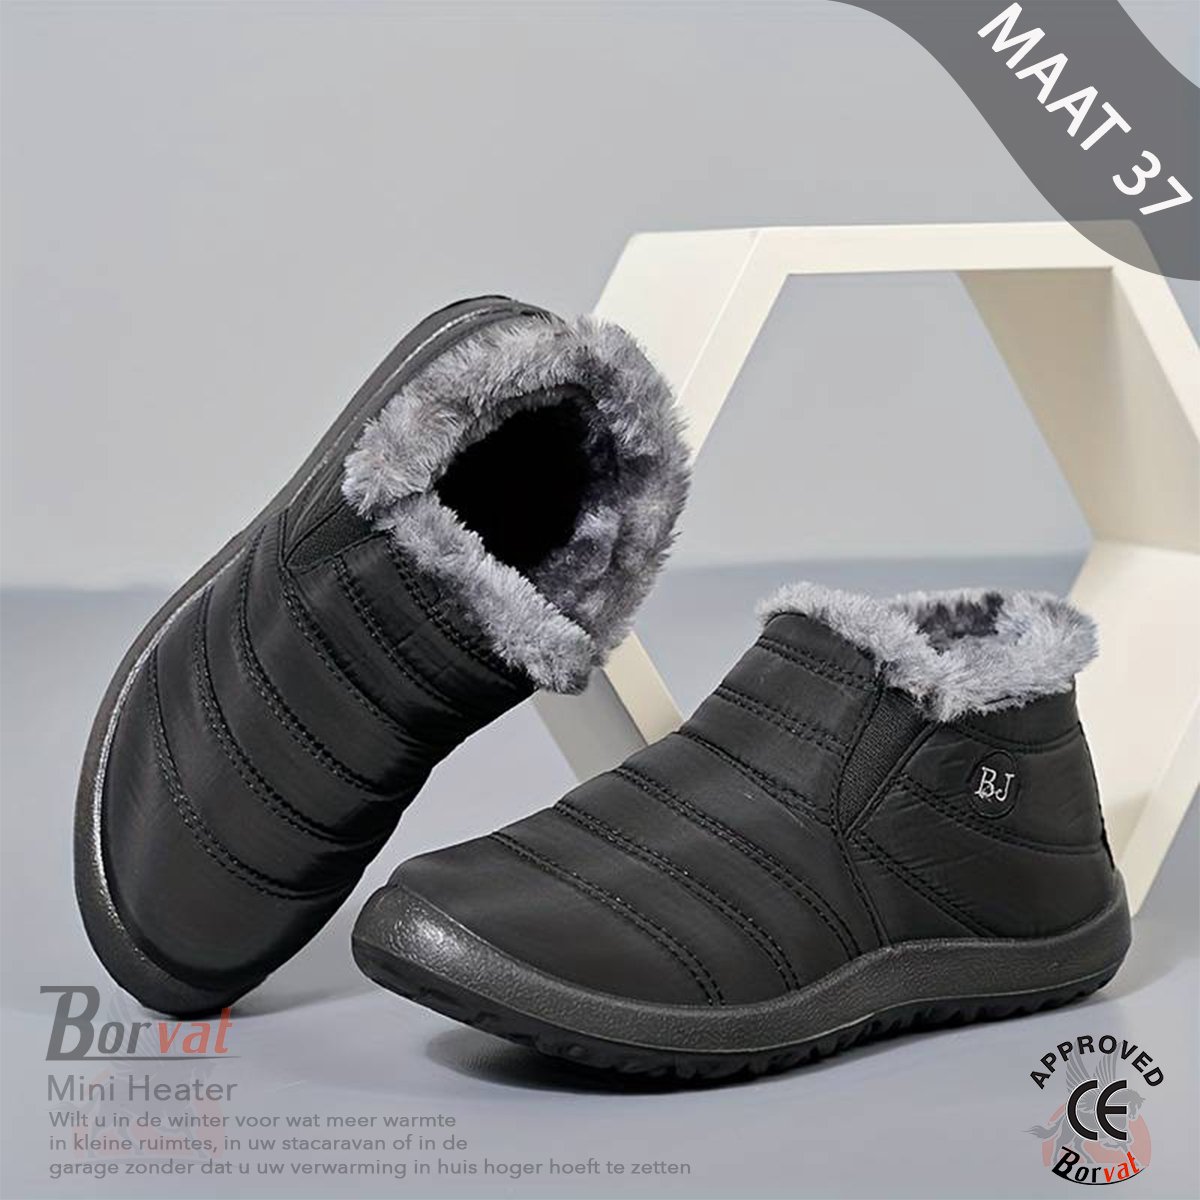 Borvat® - Unisex Schoenen - Winter Sneakers - Lichtgewicht Winterschoenen - Heren / Dames - Vrijetijdsschoenen Met Bont - Zwar - Maat 37 - Borvat®